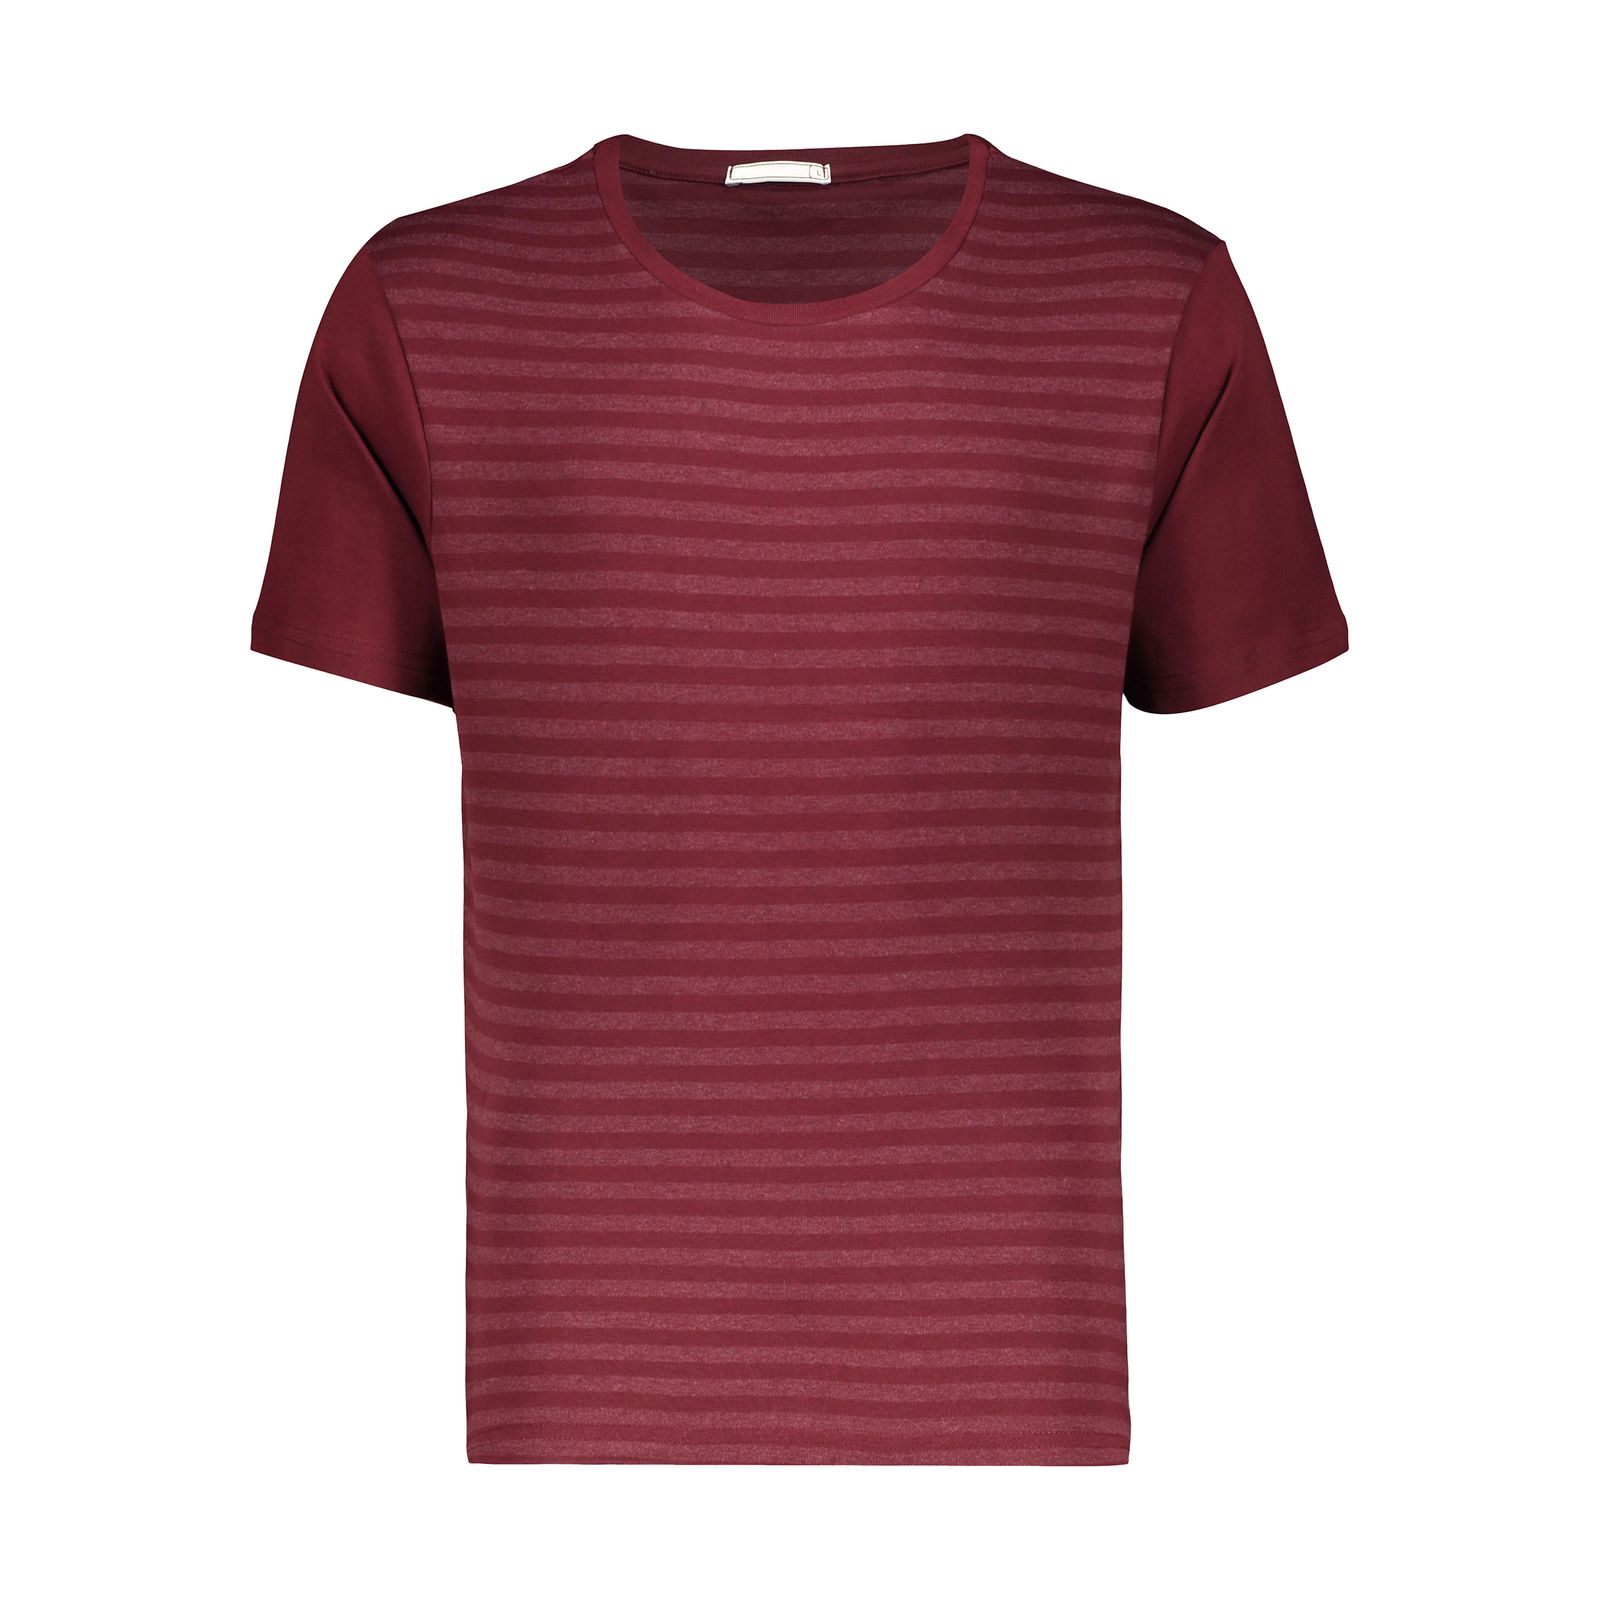 تی شرت آستین کوتاه مردانه دیجی استایل اسنشیال مدل 249112370 -  - 1